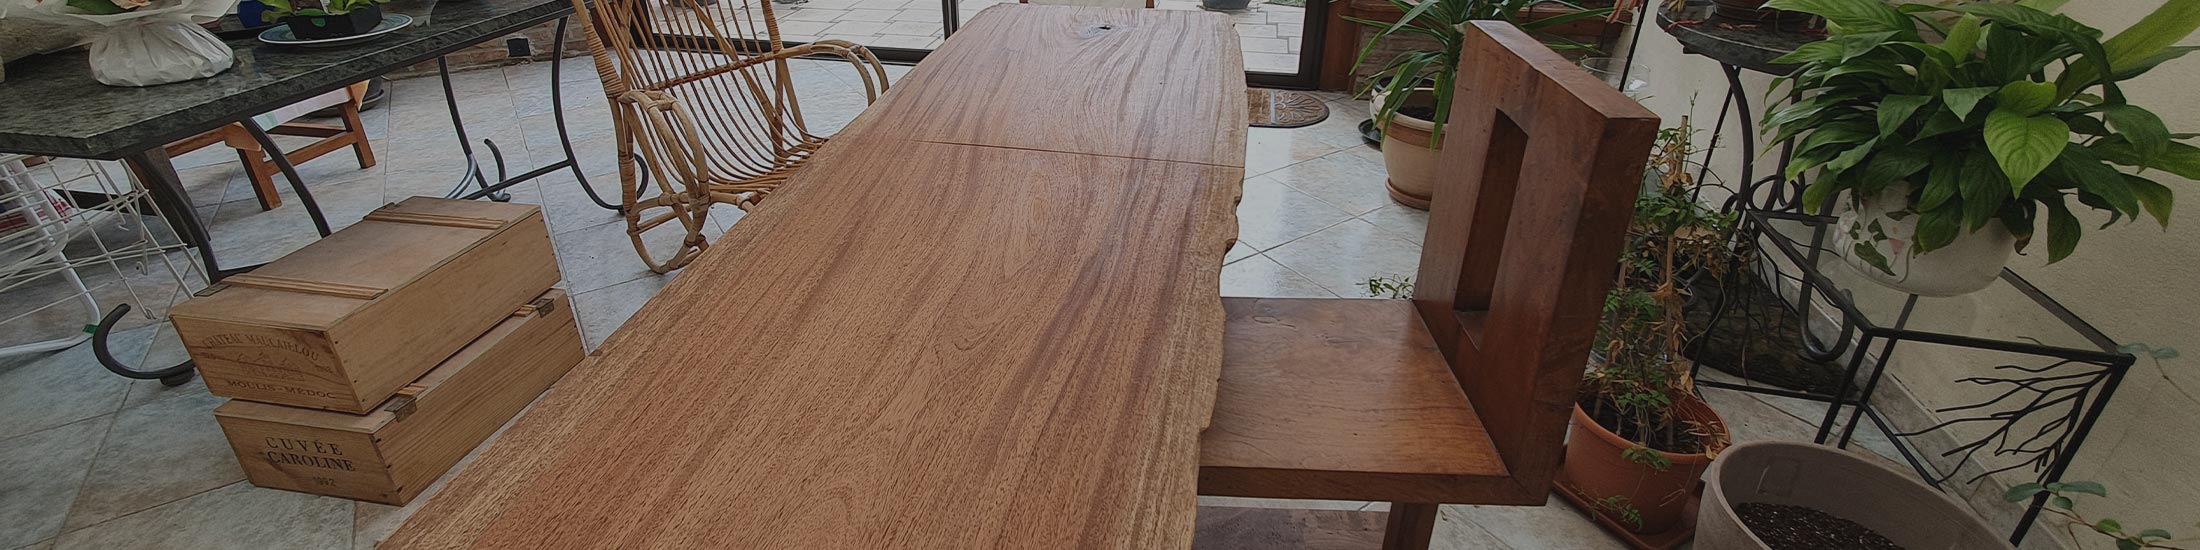 image of hardwood lumber tabletop